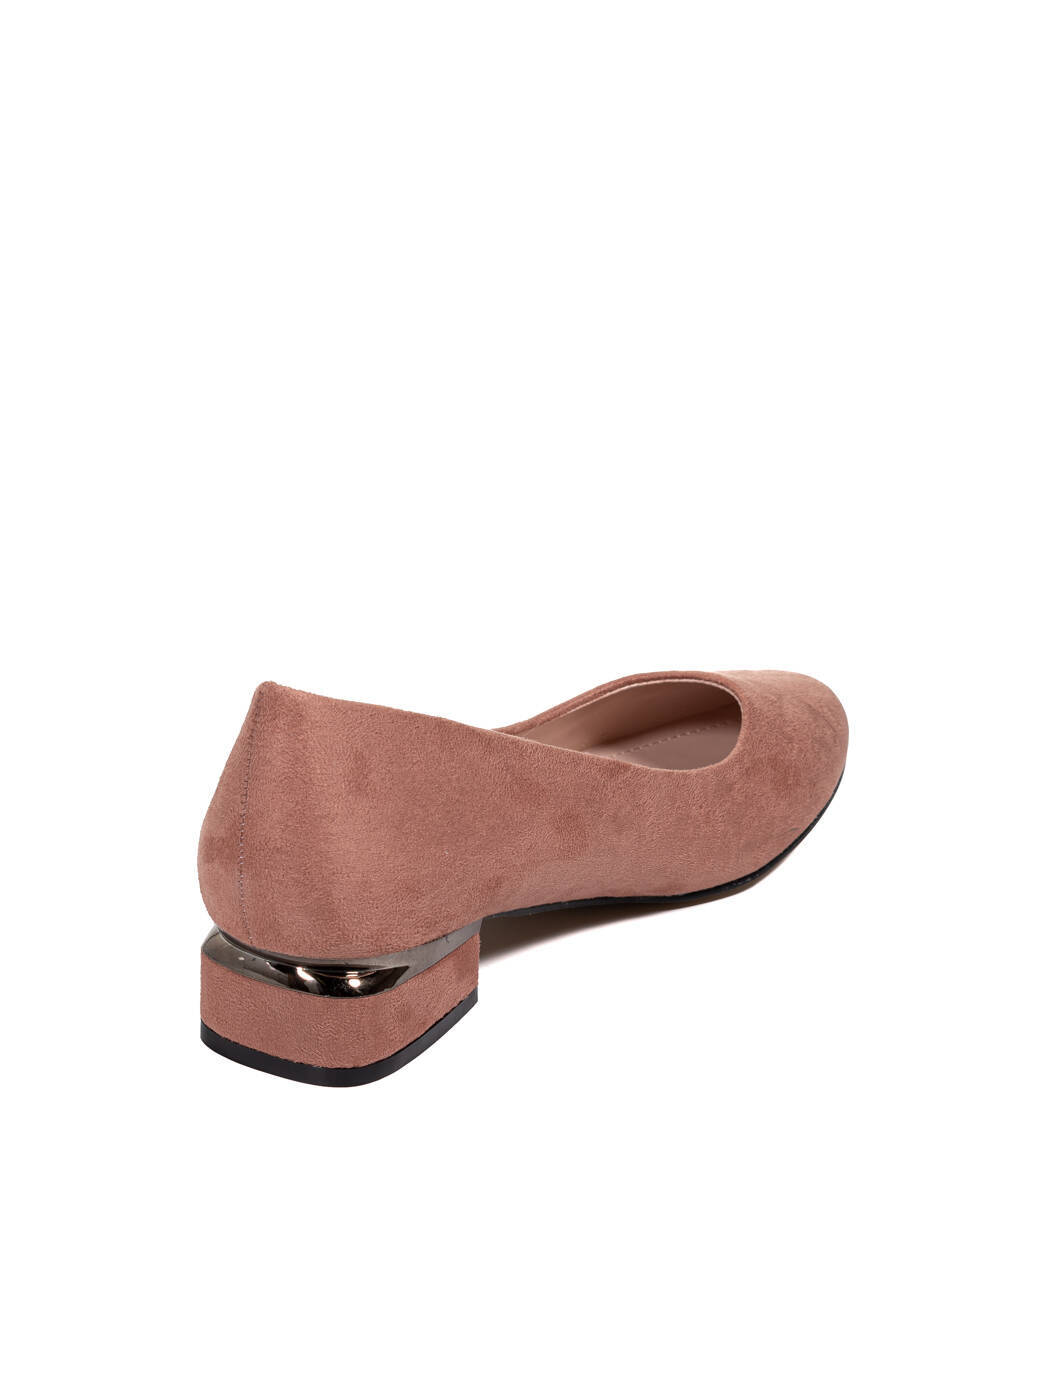 Туфли женские розовые экозамша каблук устойчивый демисезон от производителя 5M вид 0